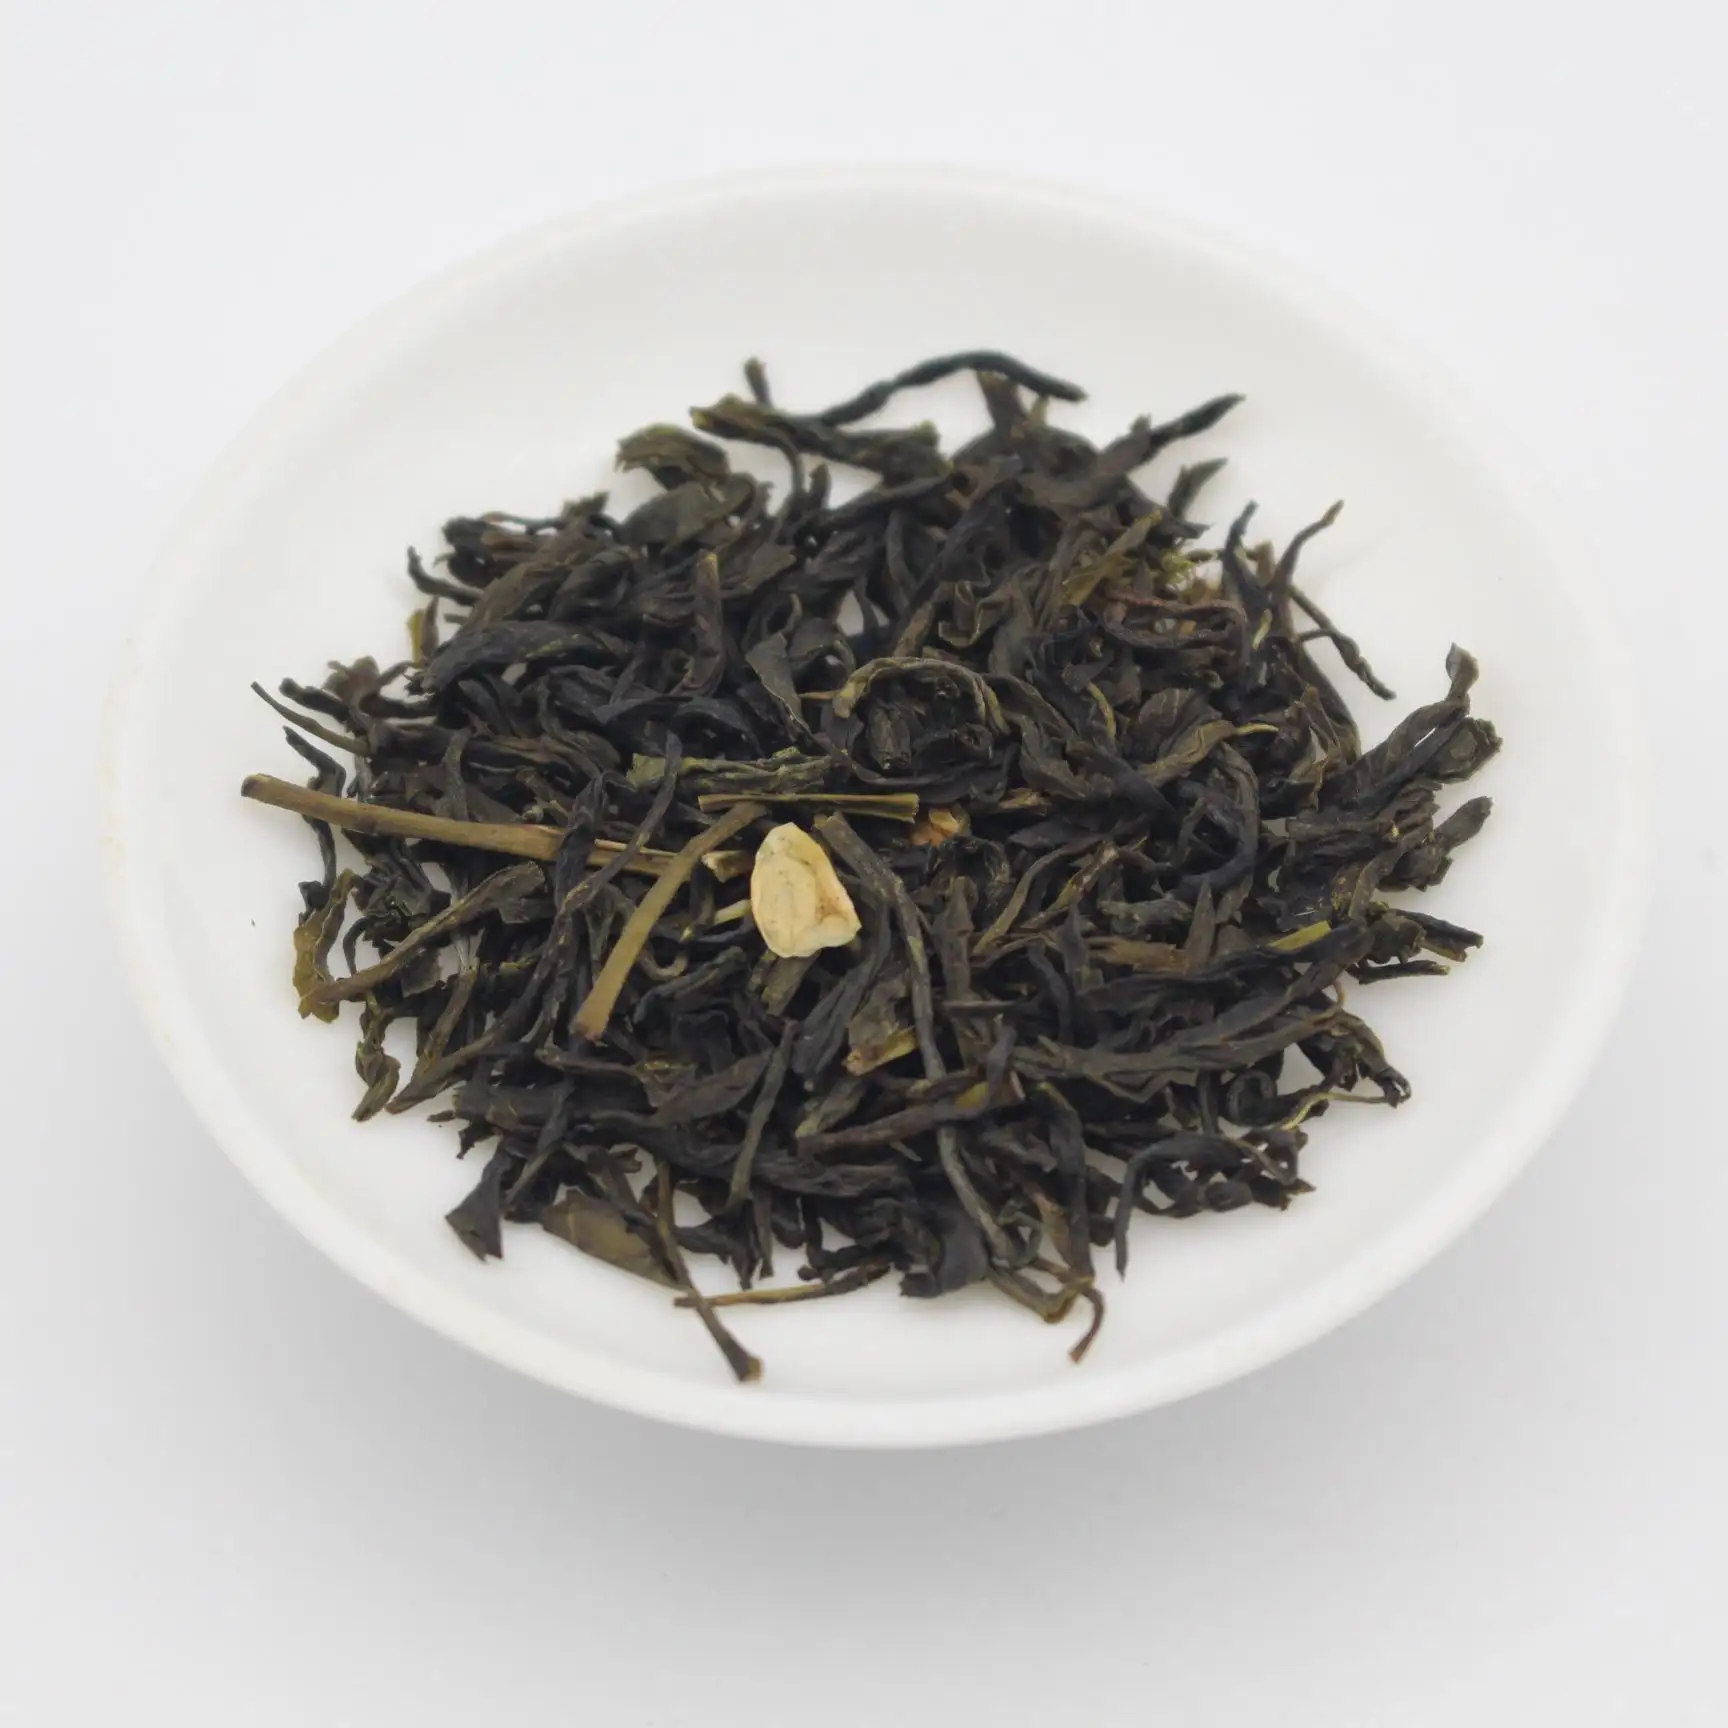 EU-zertifizierter Spring Jasmine Silver Needle Jasmin tee Chinesischer berühmter grüner Tee für den europäischen Markt